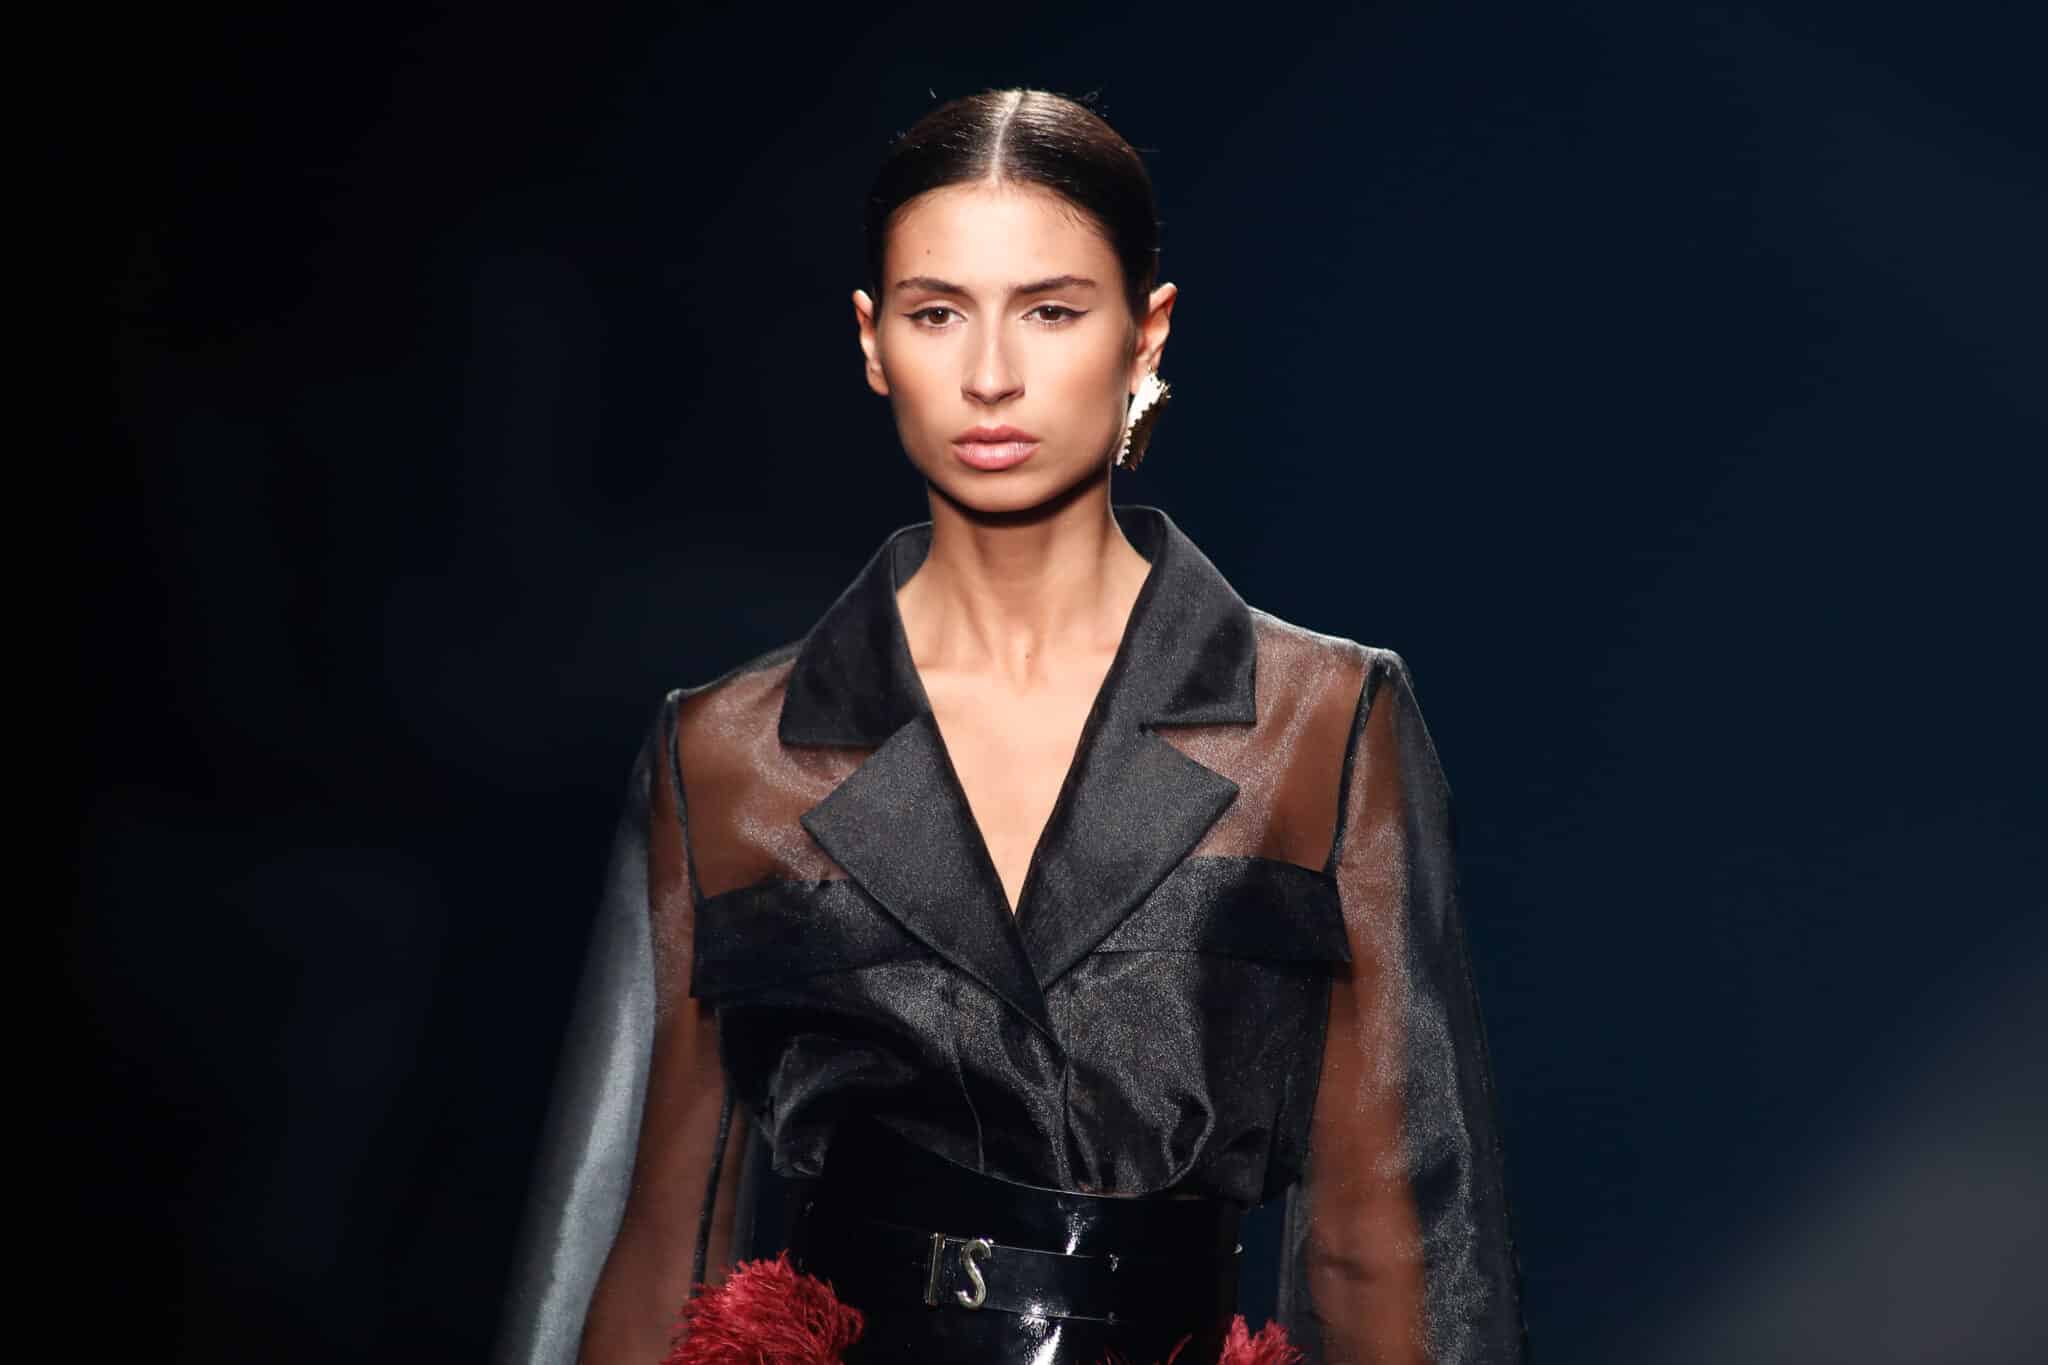 Una modelo presenta uno de los diseños de la colección de Isabel Sanchís para la temporada primavera/verano 2021 durante la 72ª Edición de la Mercedes-Benz Fashion Week Madrid, en Ifema, Madrid